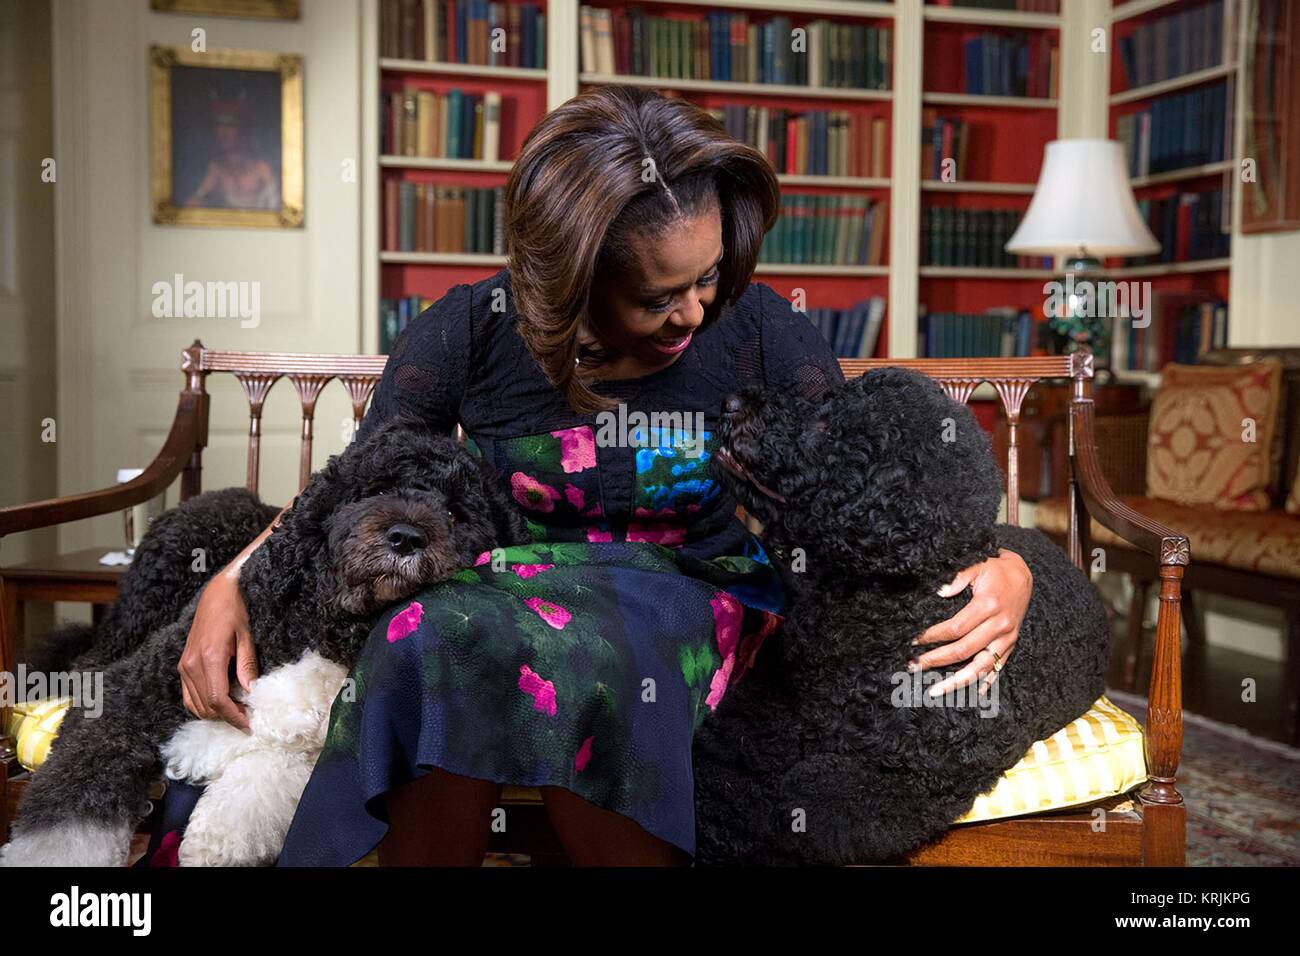 First Lady der USA Michelle Obama Bänder ein Video für die Schauspieler Ellen DeGeneres 56. Geburtstag mit Hilfe von Familie Hunde Bo (links) und sonnig im Weißen Haus Bibliothek Januar 28, 2014 in Washington, DC. Stockfoto